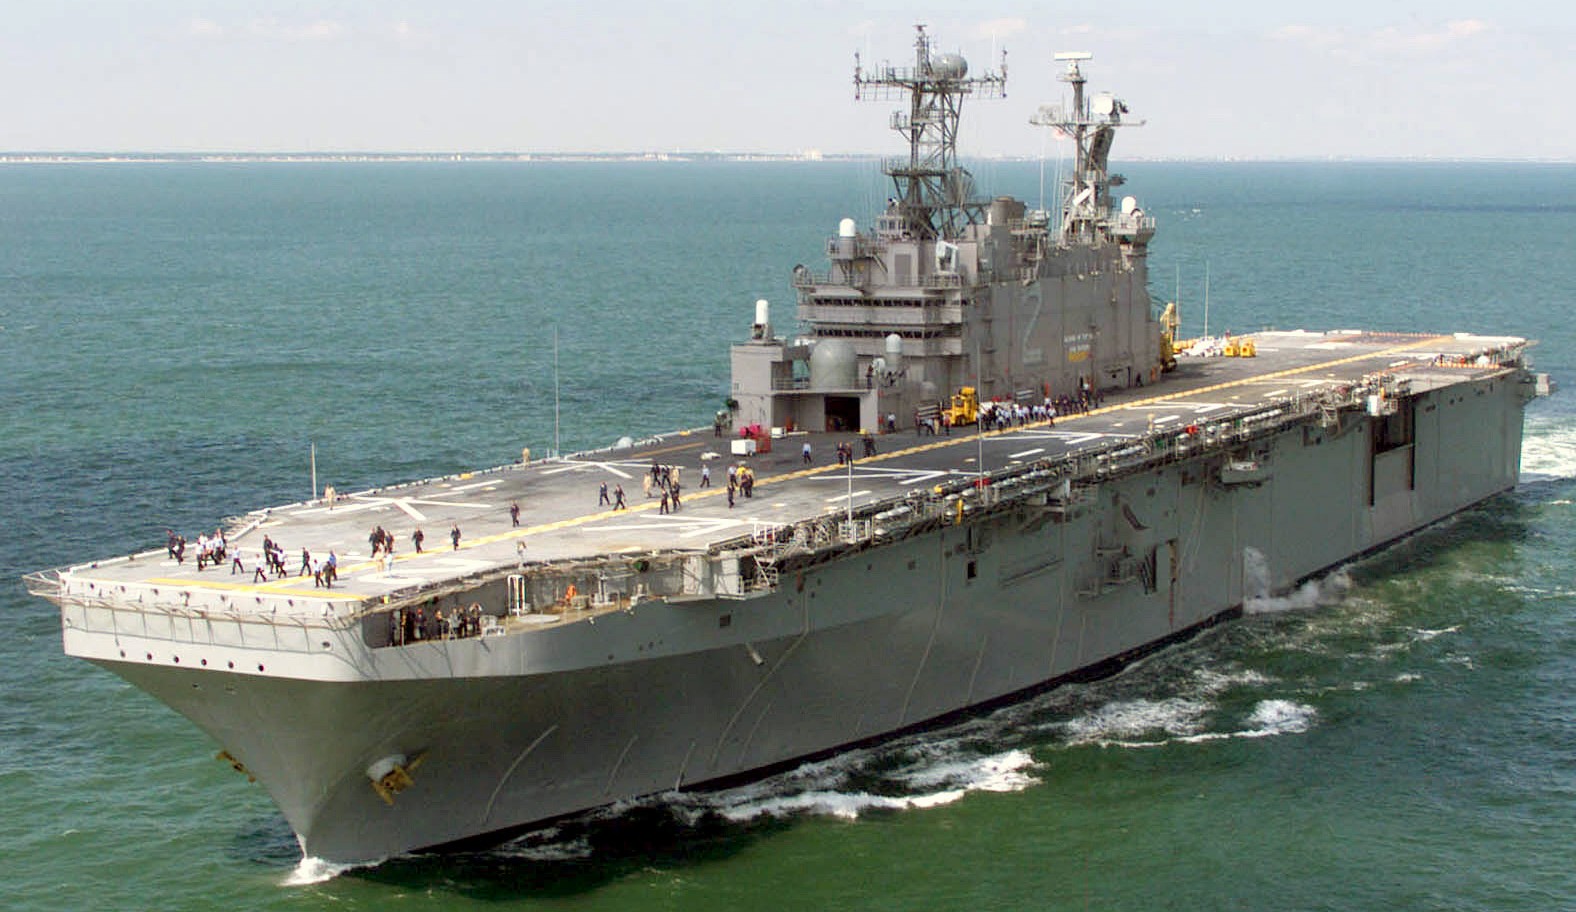 lha-2 uss saipan tarawa class amphibious assault ship us navy 13